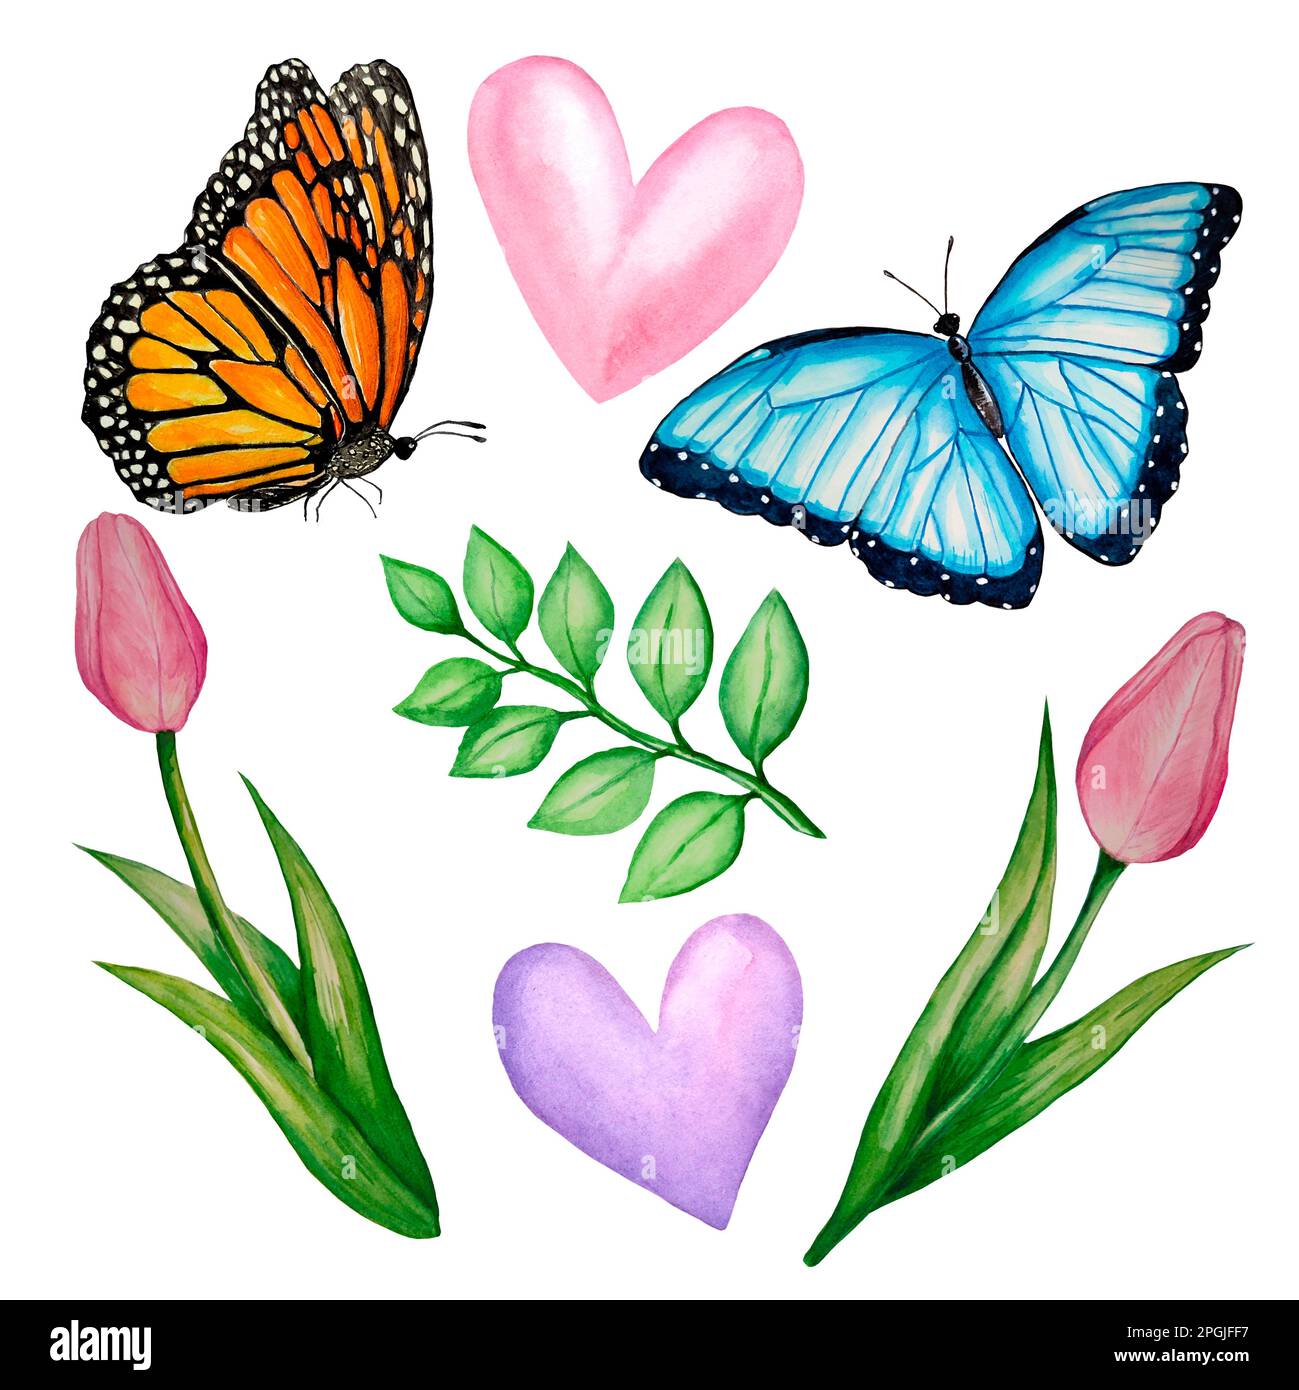 Eine Reihe von Aquarell-Illustrationen zum Thema Frühling: Tulpen, Schmetterlinge, Blätter, Aquarell Herzen auf weißem Hintergrund. Bilder für Design gree Stockfoto